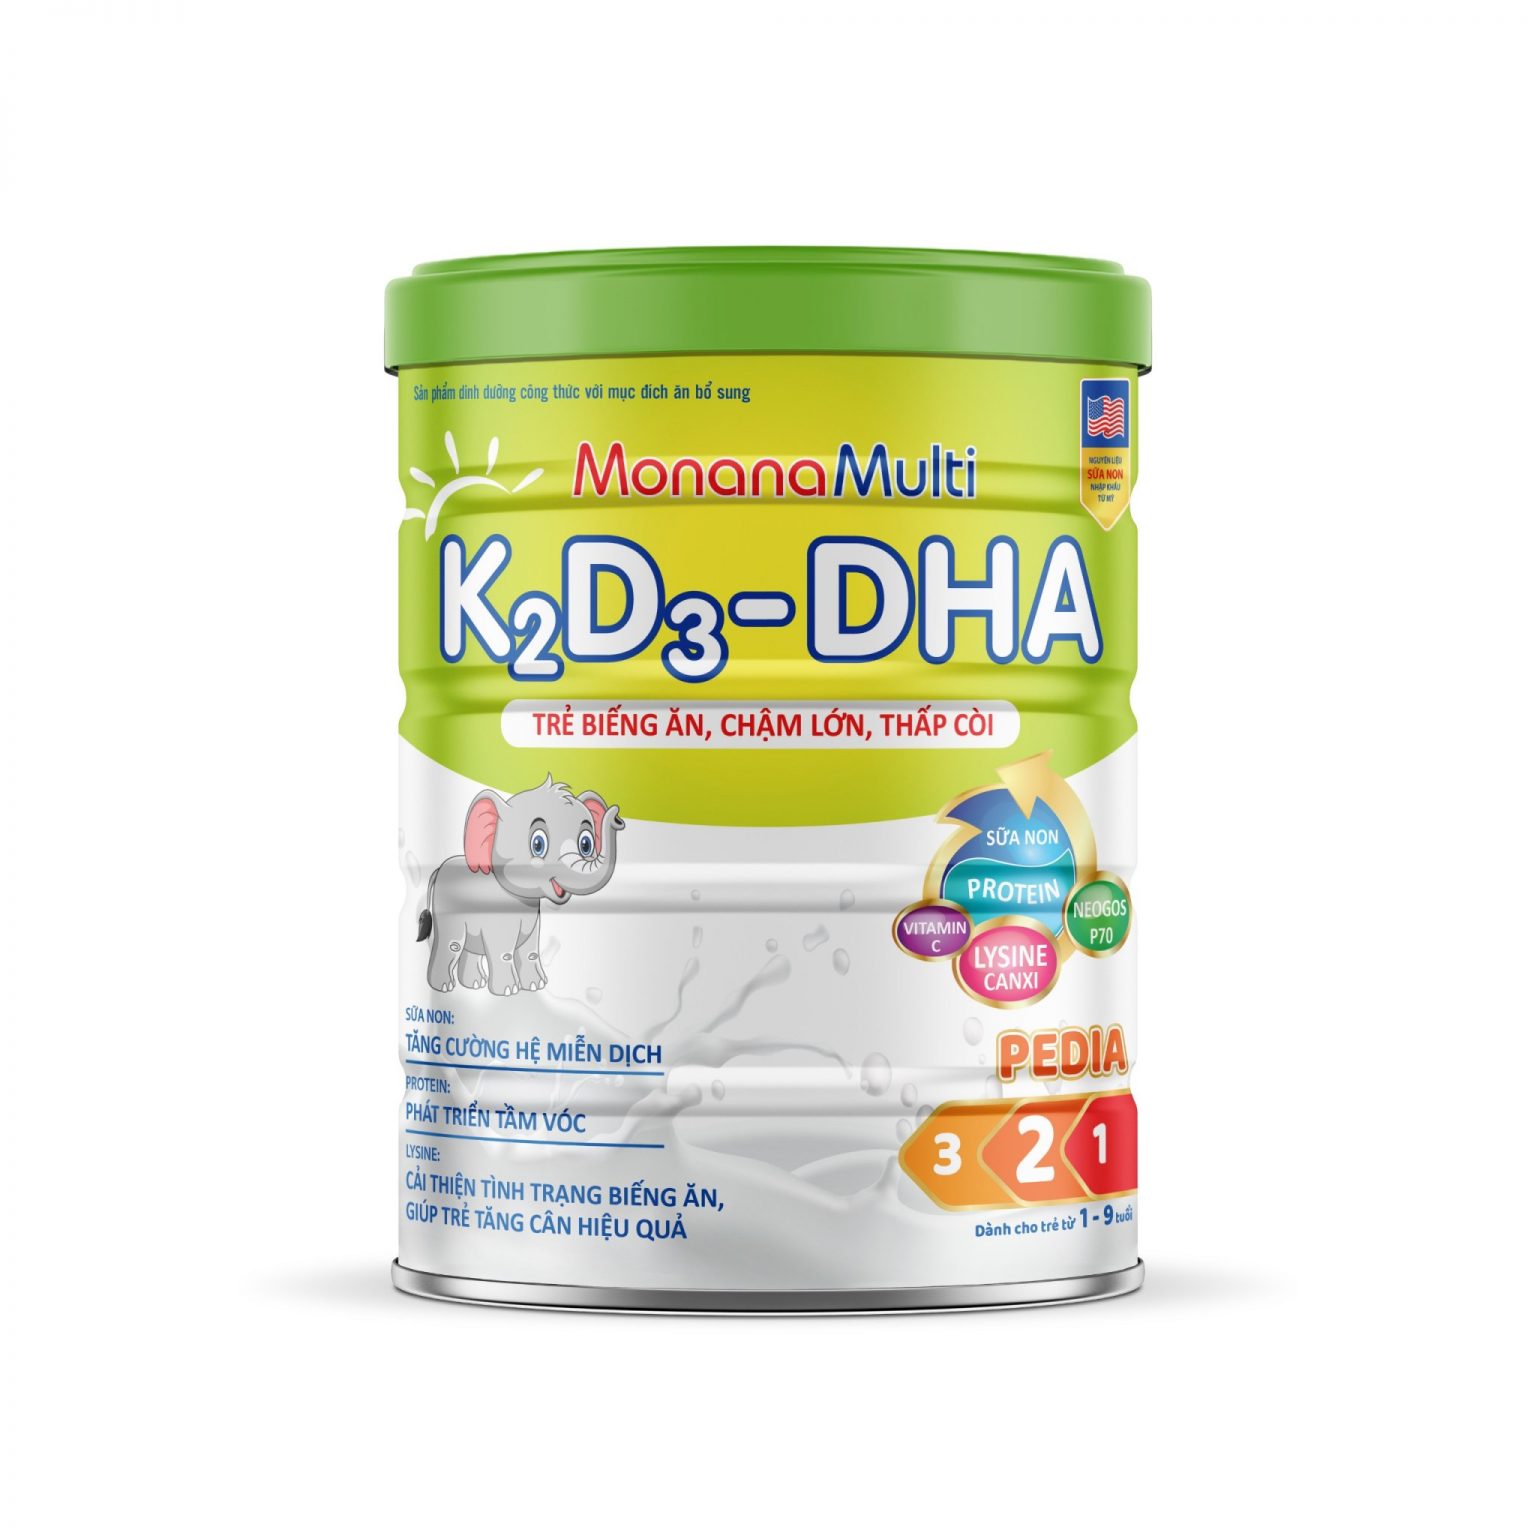 MonanaMulti K2D3-DHA Pedia - Cho Trẻ Biếng Ăn, Chậm Lớn, Thấp Còi